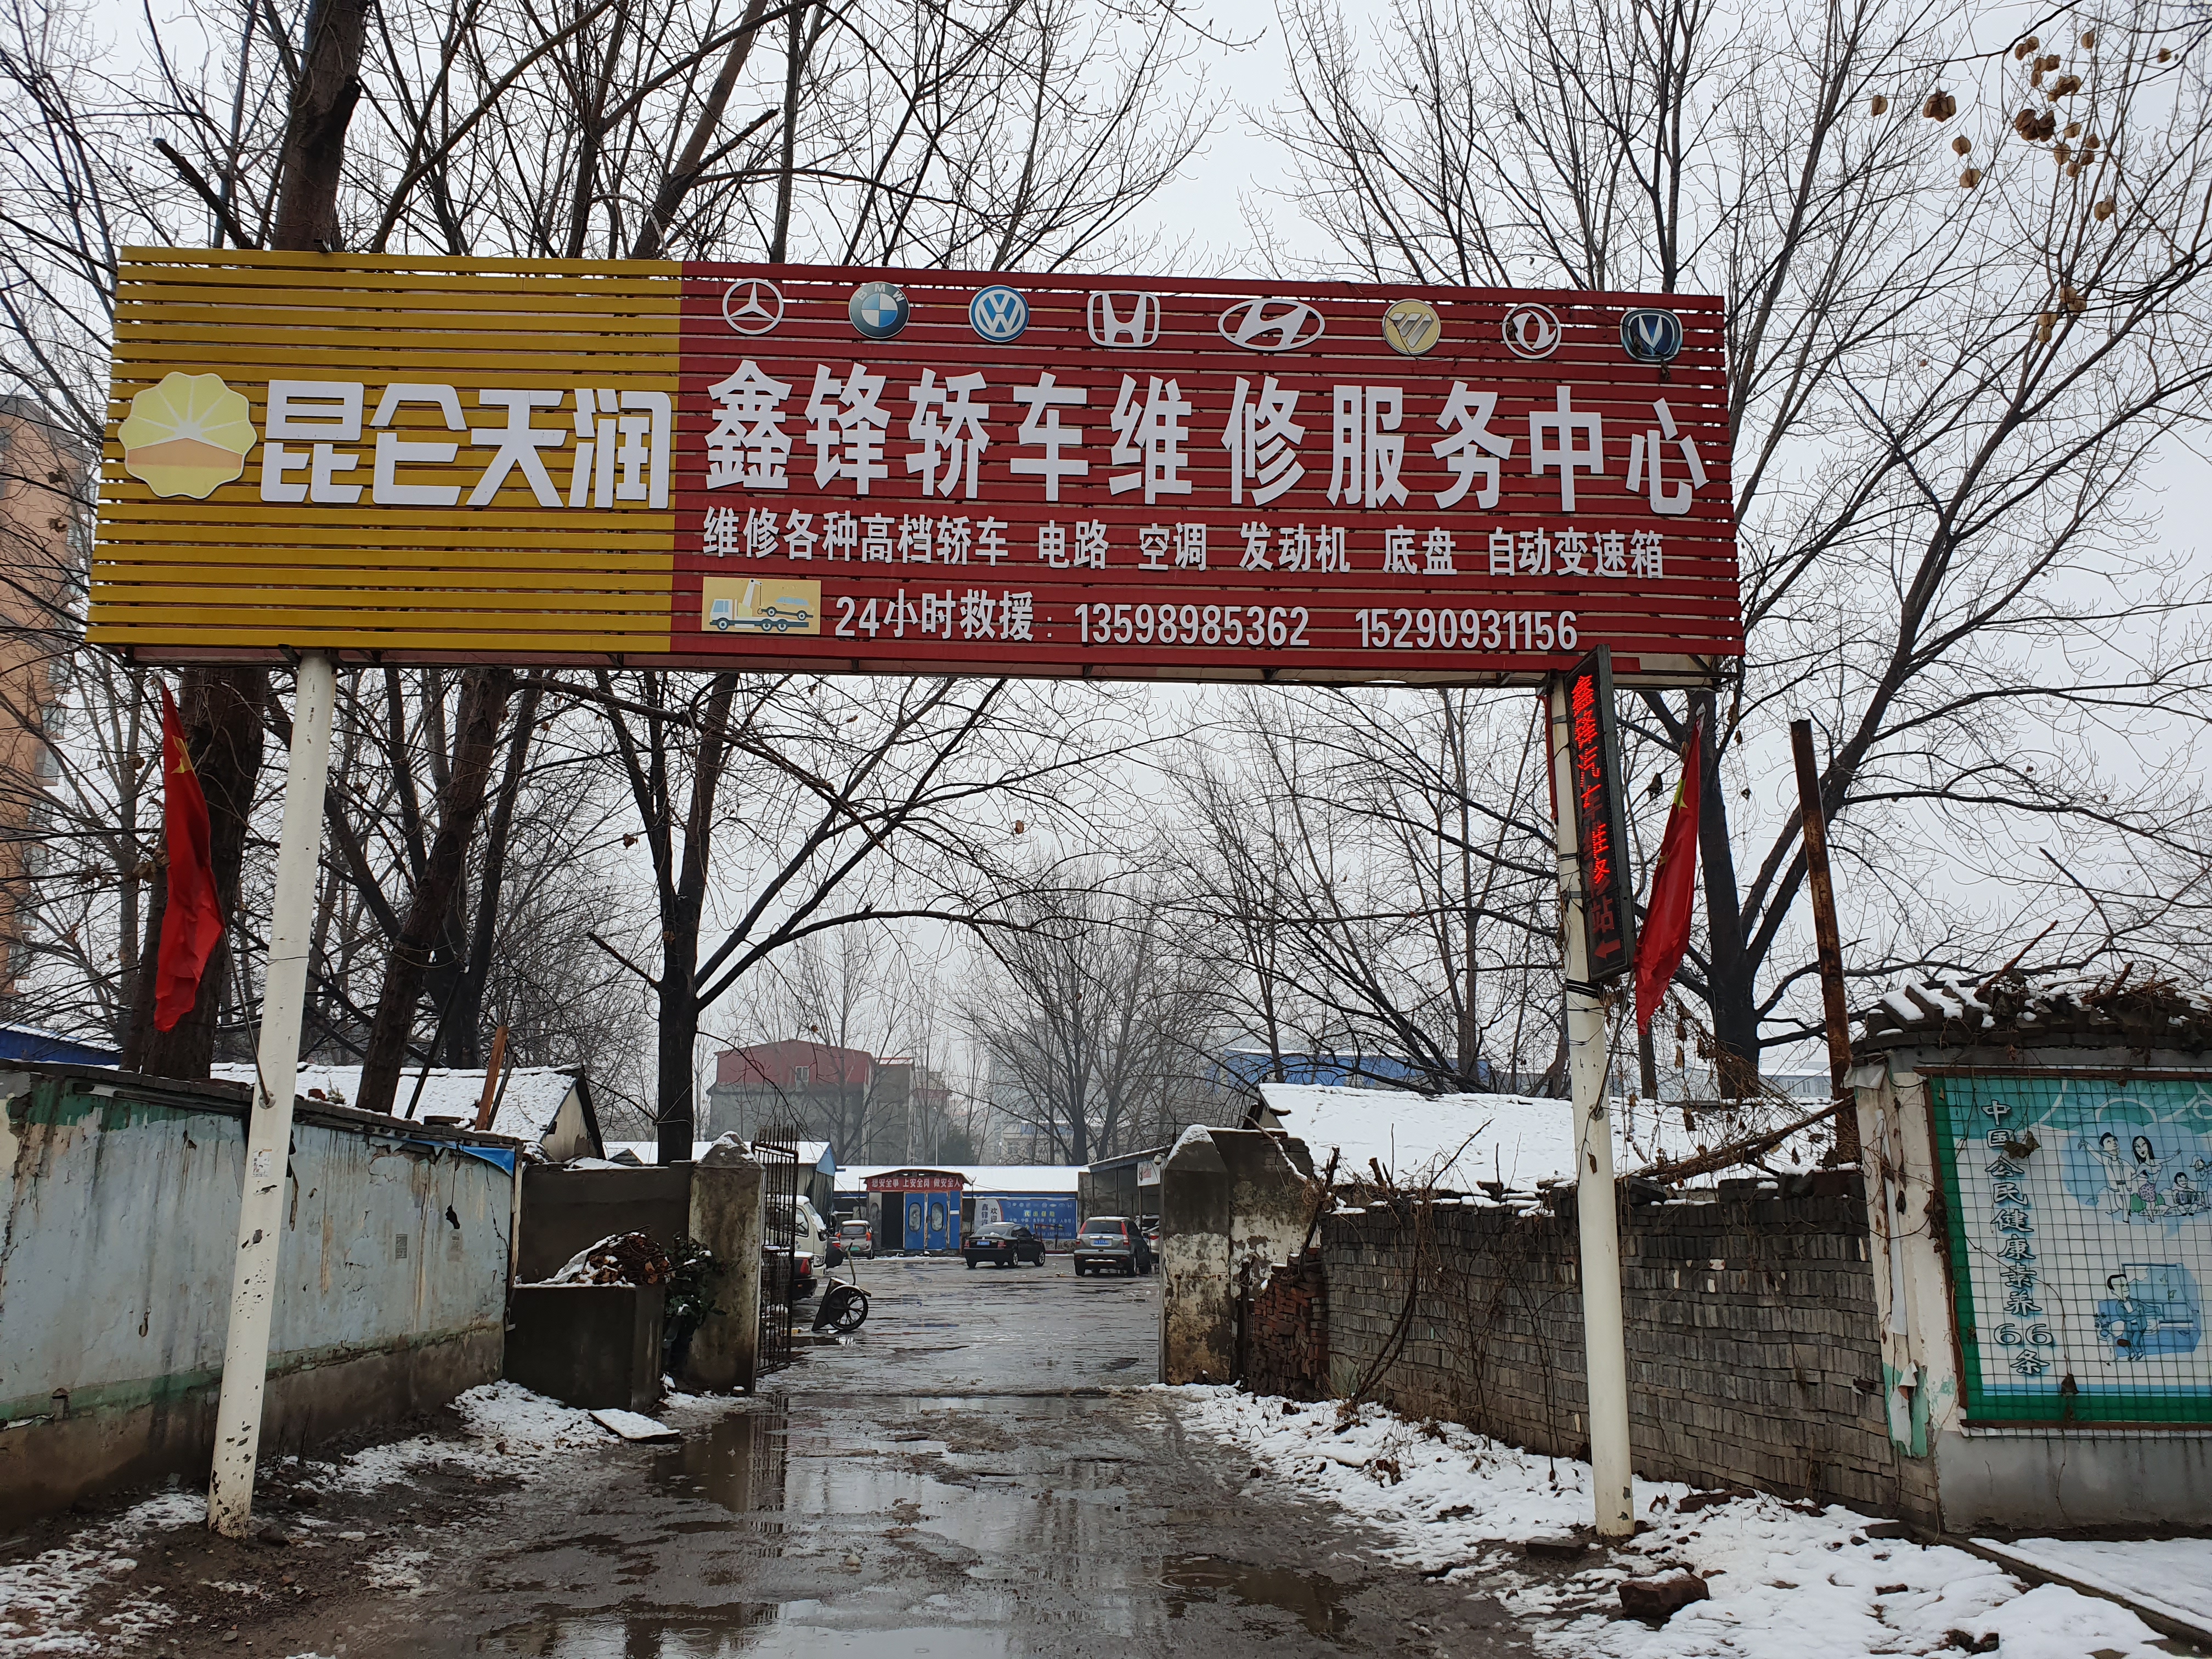 河南许昌襄城县自然资源局回应土地挂牌出让投诉 称确实存在瑕疵